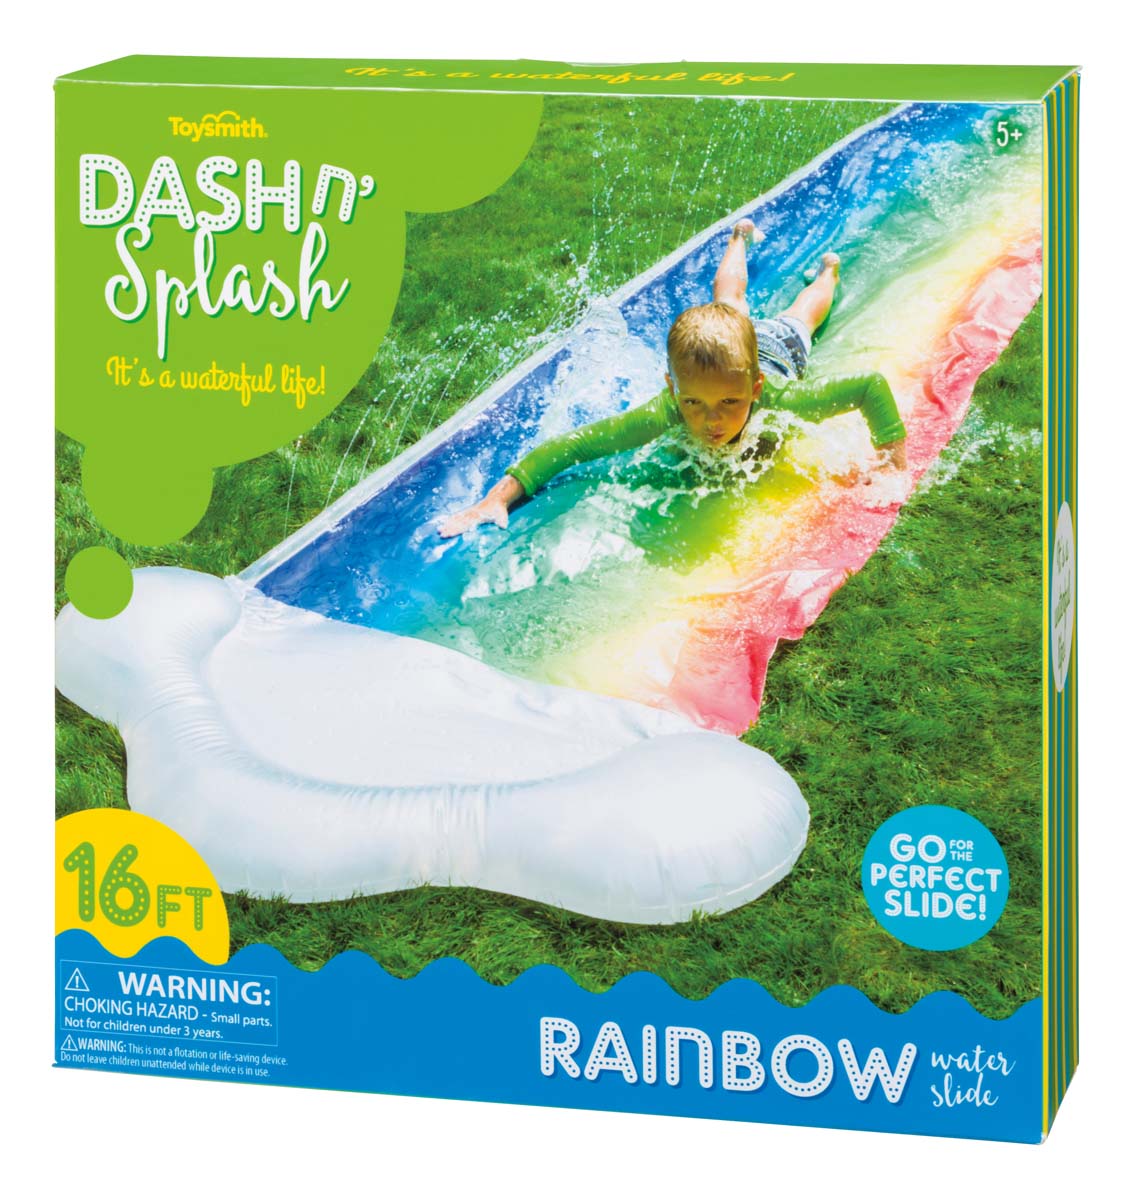 Dash N Splash Rainbow Slide package